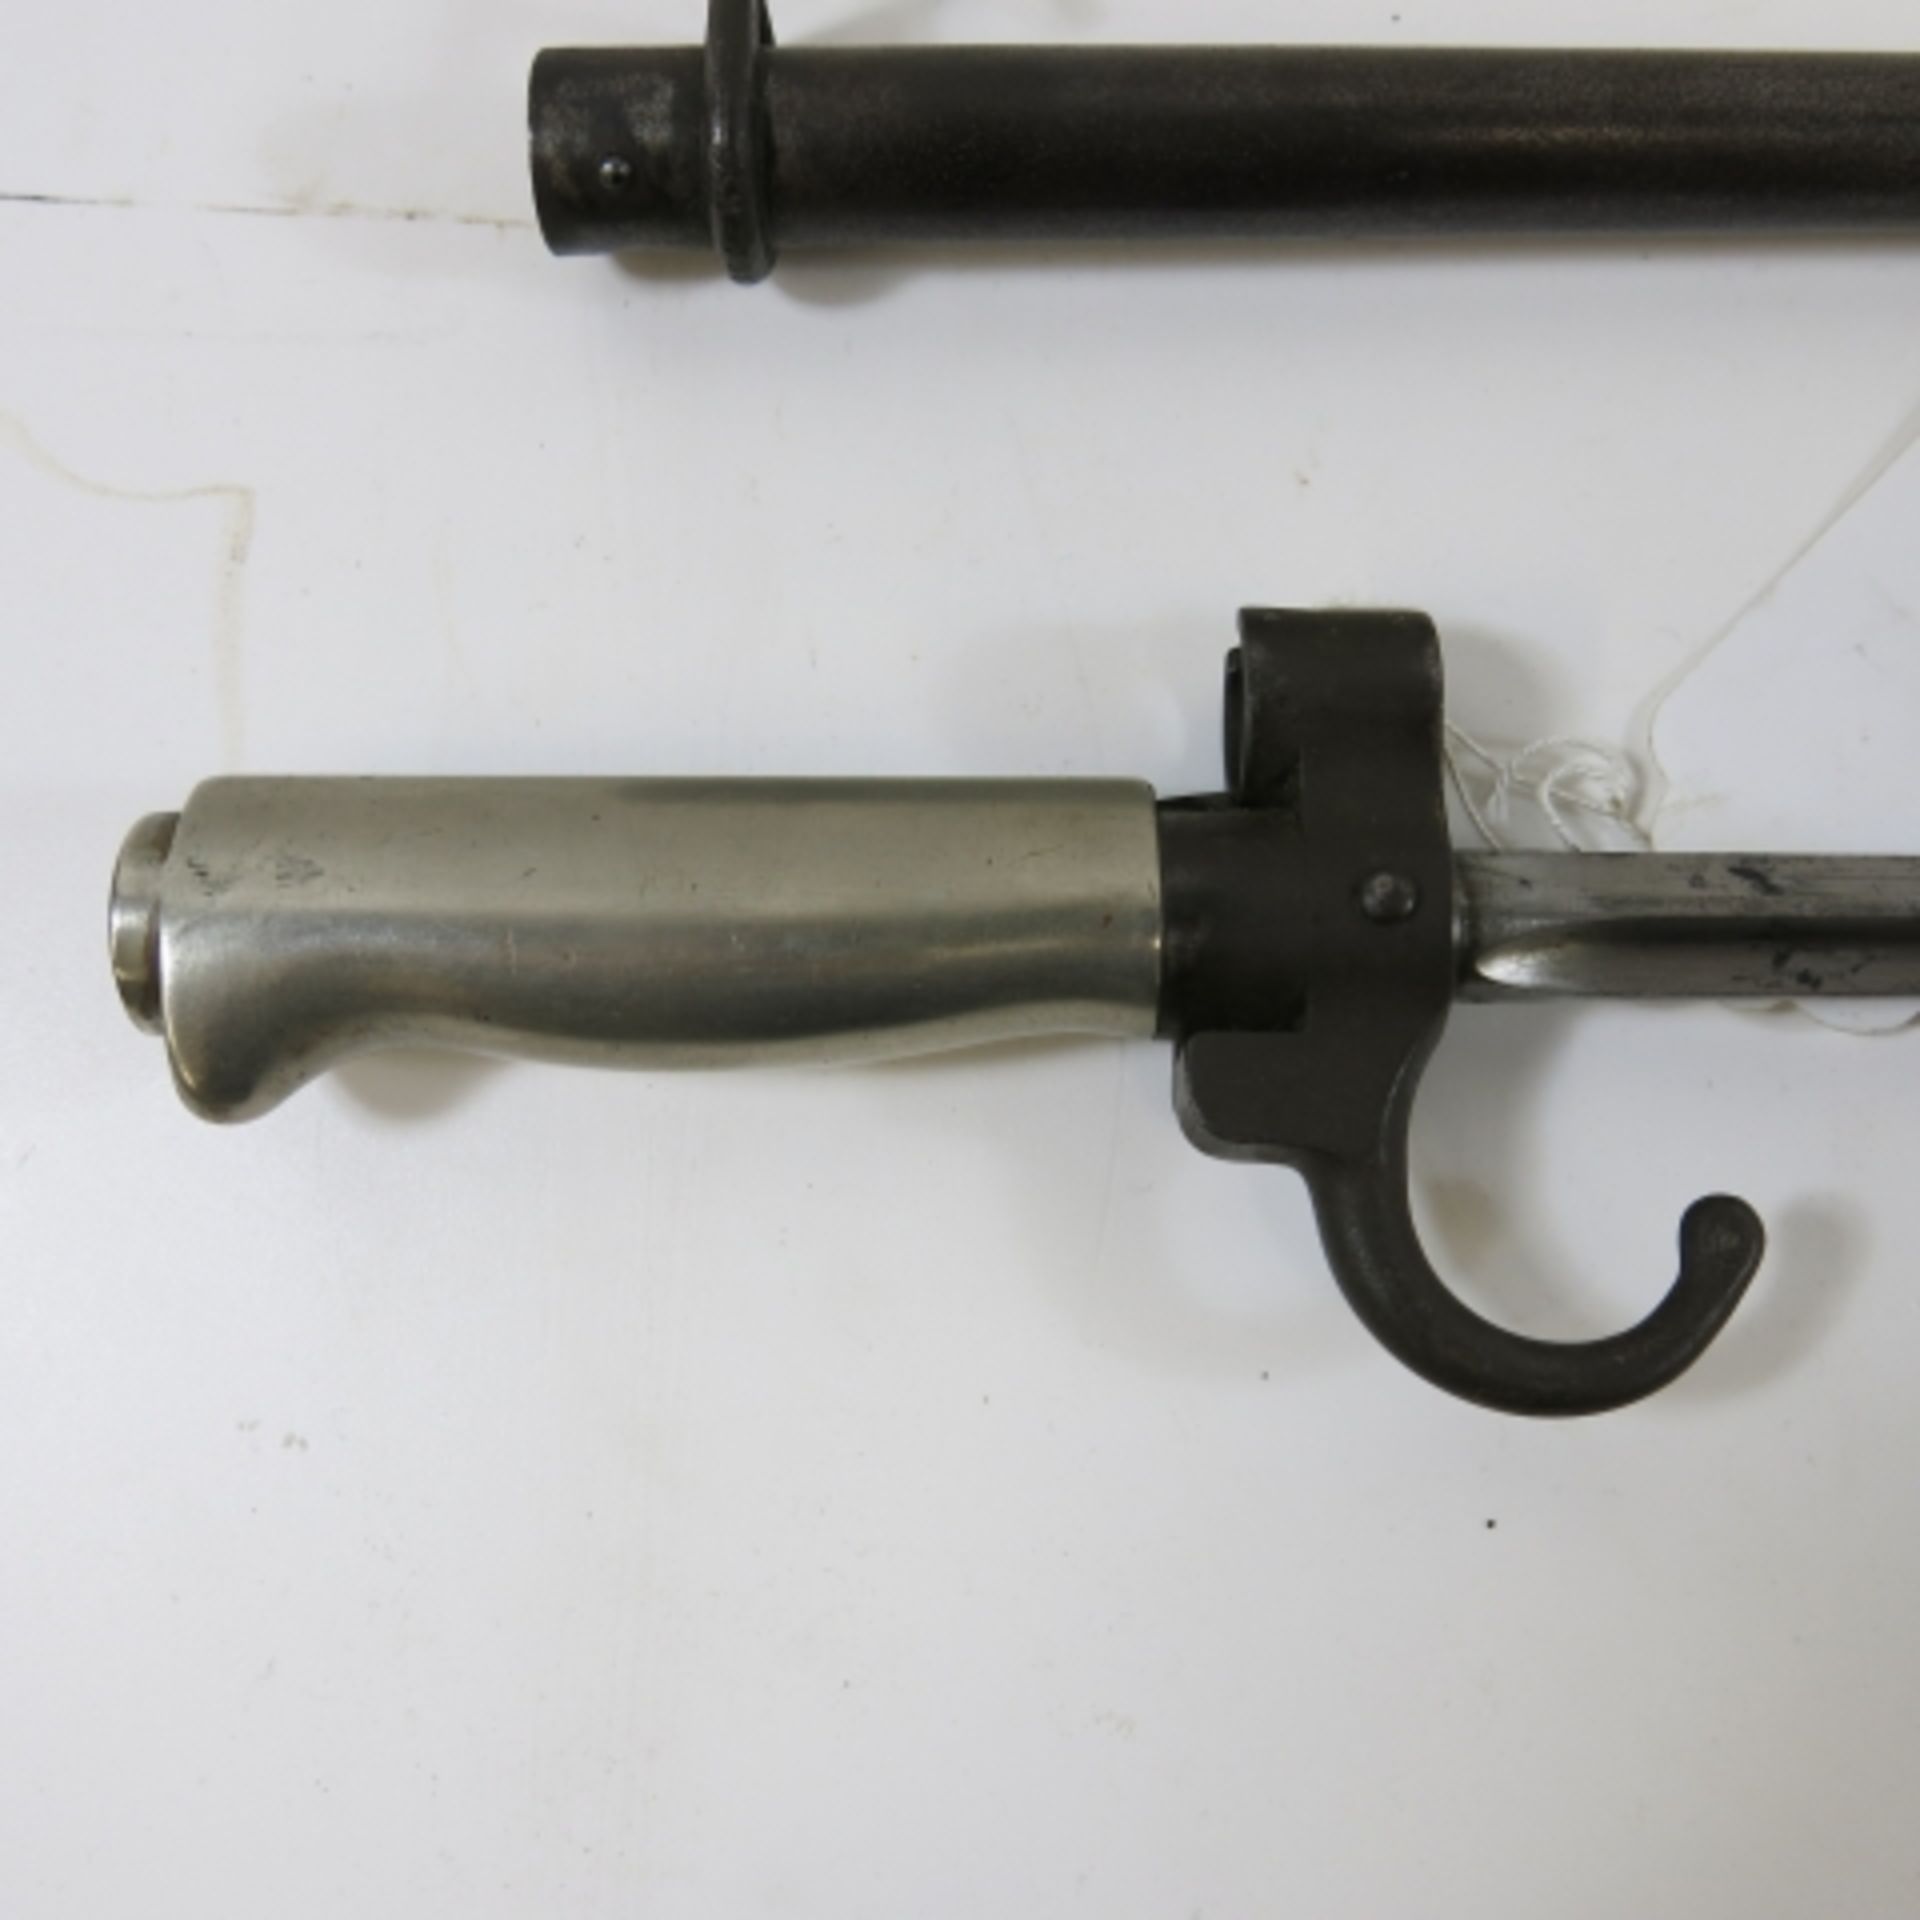 A French 1886 Epée bayonet. Blade length 52cm (est. £30-£50) - Image 3 of 3